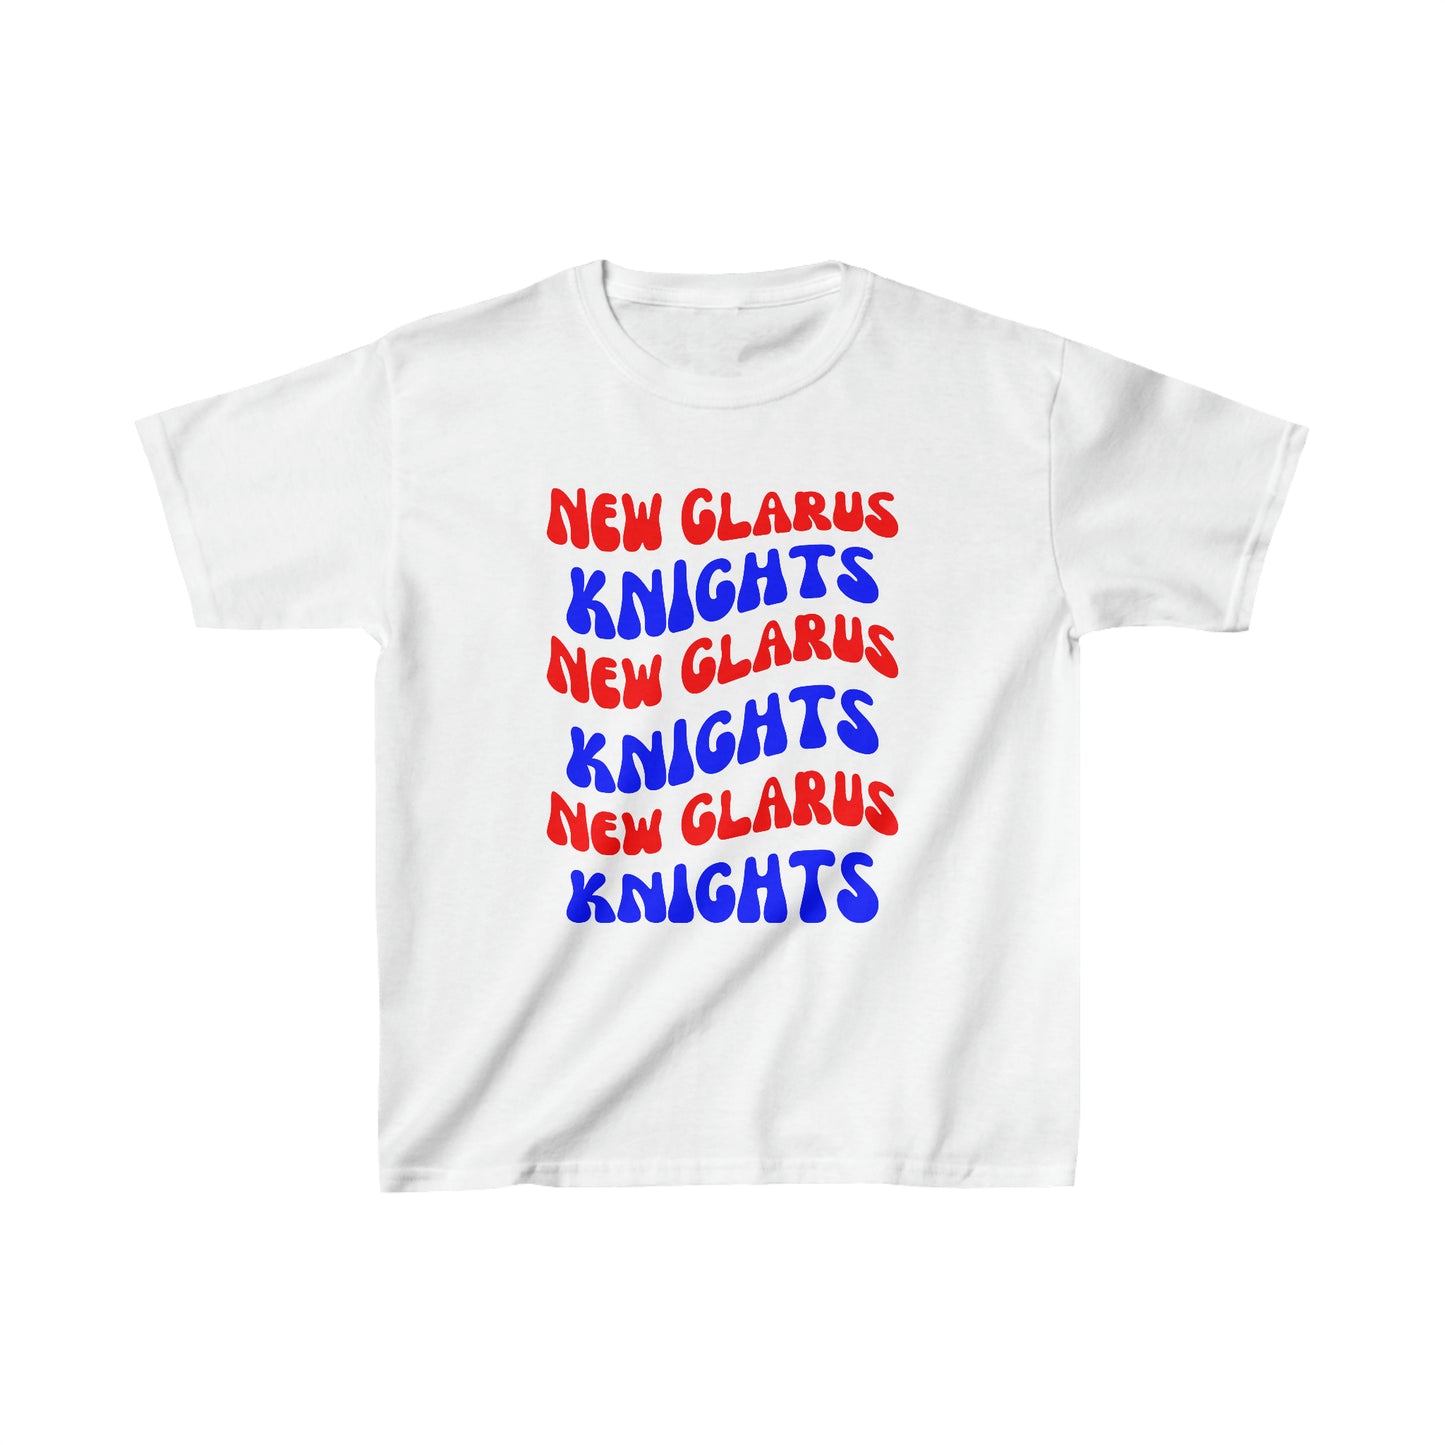 New Glarus Knights - Kids T-Shirt